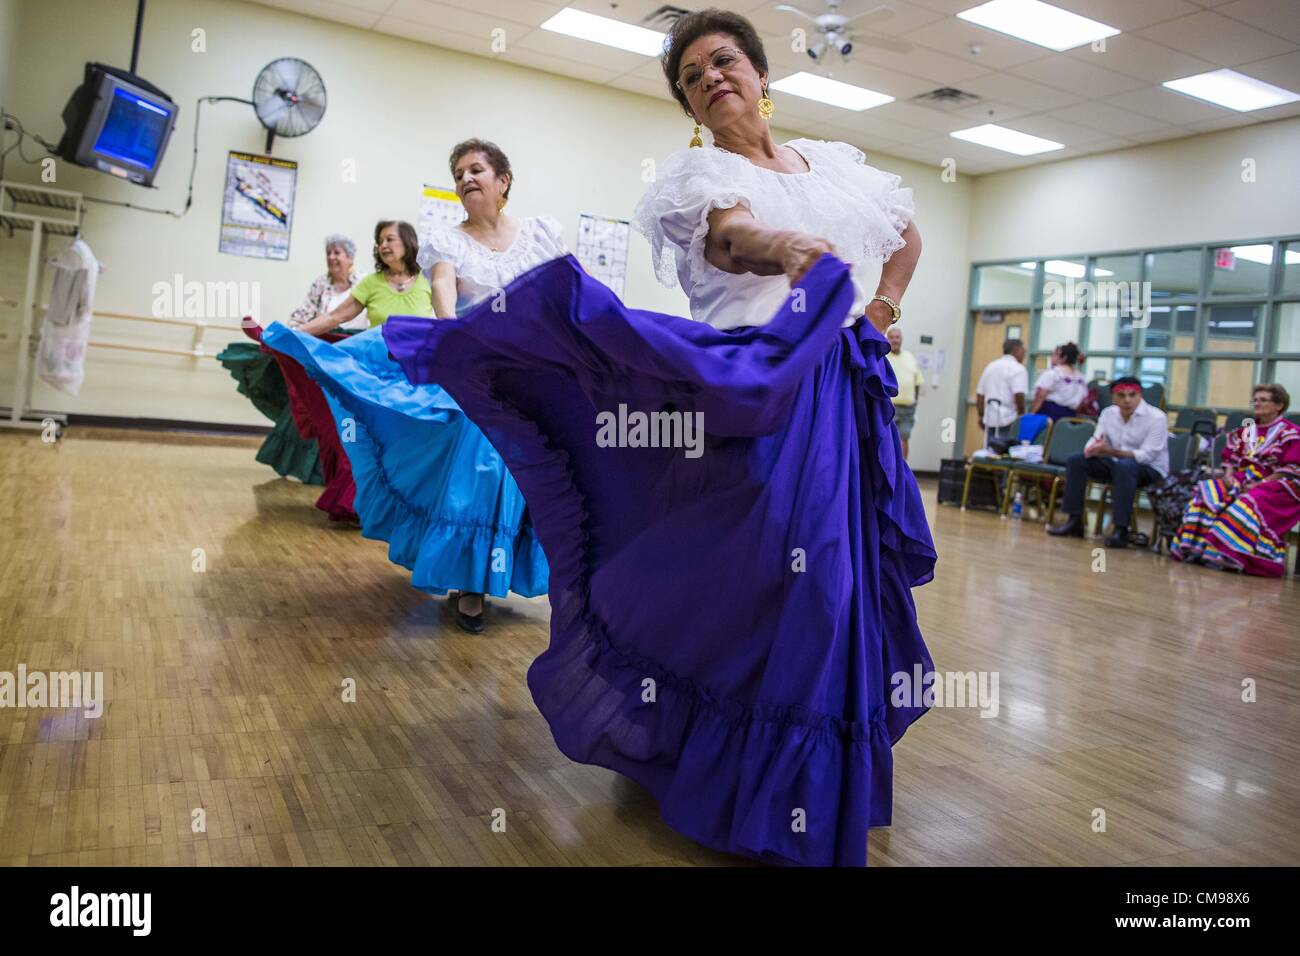 27. Juni 2012 - Glendale, Arizona, USA - MARGIE führen Mai, 65 Jahre alt, und andere Mitglieder der Senior Fiesta Tänzer während der Proben für die Senior-Fiesta-Tänzer in Glendale Adult Center, in Glendale, AZ, einem Vorort von Phoenix. Tanzen wie ein Teil des Trainingsprogramm nicht ungewöhnlich ist, aber die Senior Fiesta Tänzer mexikanischen Stil Folklorico Tänze für ihr Workout verwenden. Die Senior-Fiesta-Tänzer haben zusammen seit 15 Jahren durchgeführt. Sie erhalten jede Woche für Proben zusammen und führen in Pflegeheimen und Ruhestand Zentren in der Gegend von Phoenix, einmal im Monat oder so. Ihre energetische mich Stockfoto